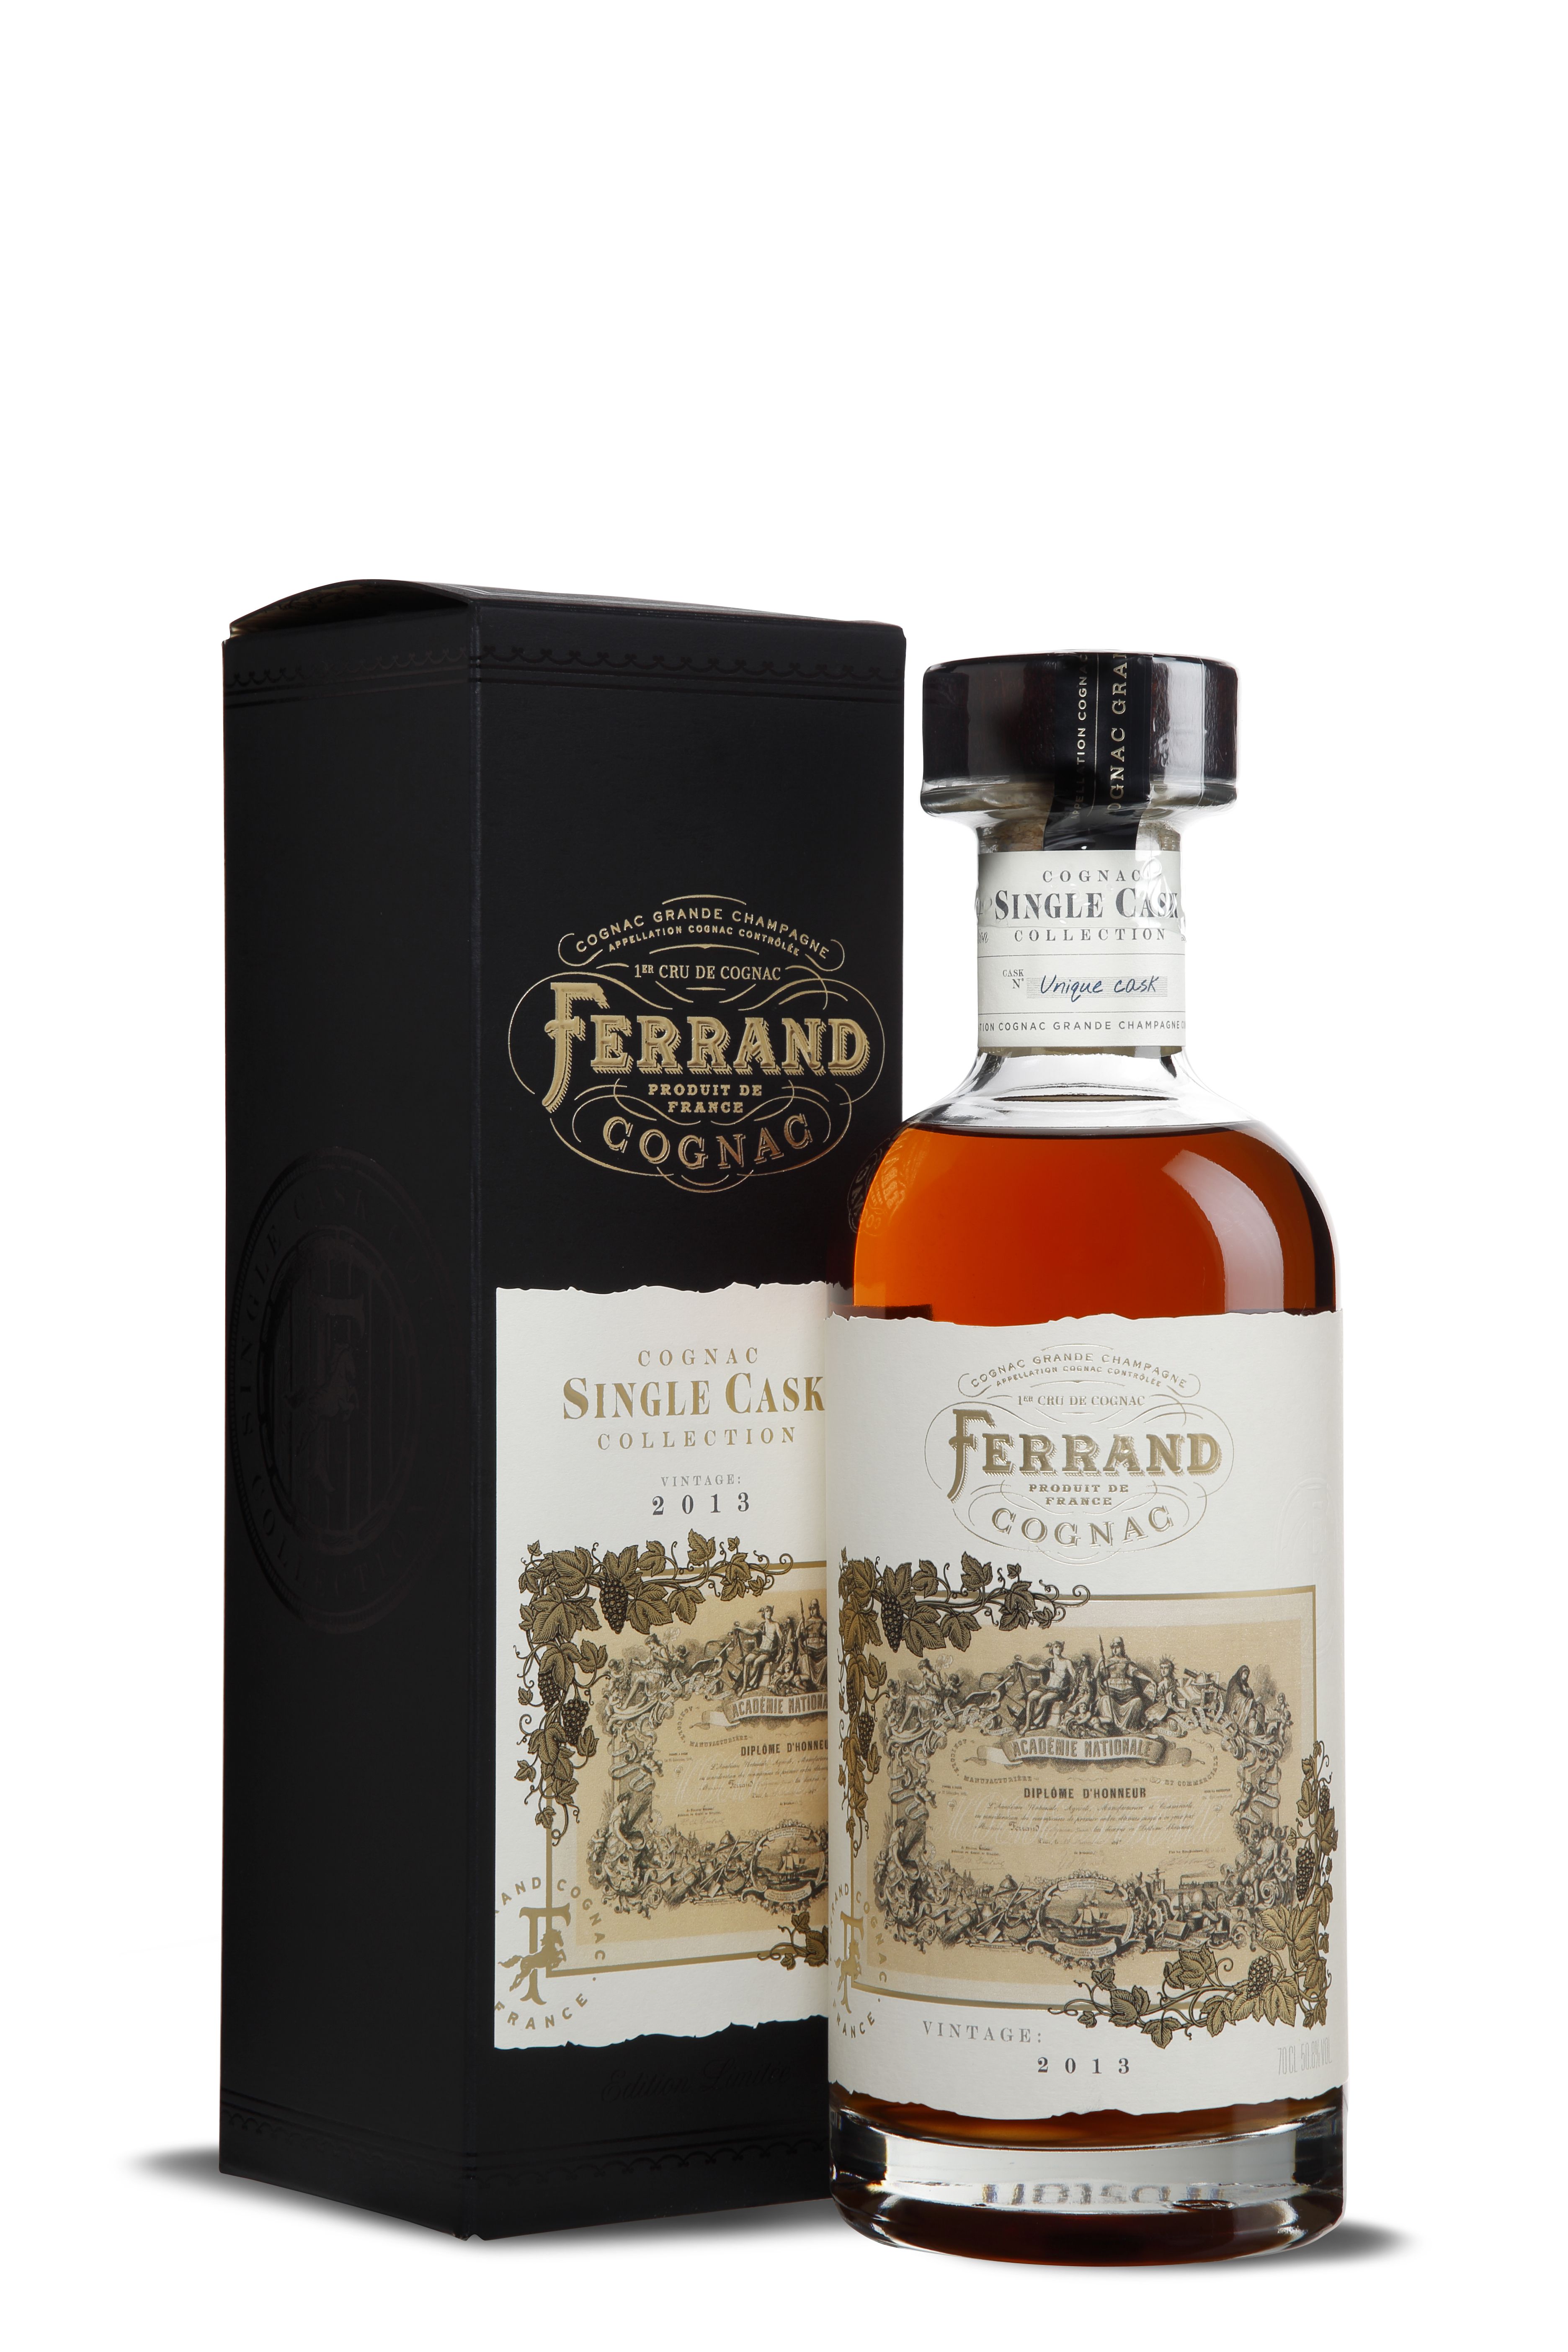 Ferrand 2013 Cognac Single Cask Collection